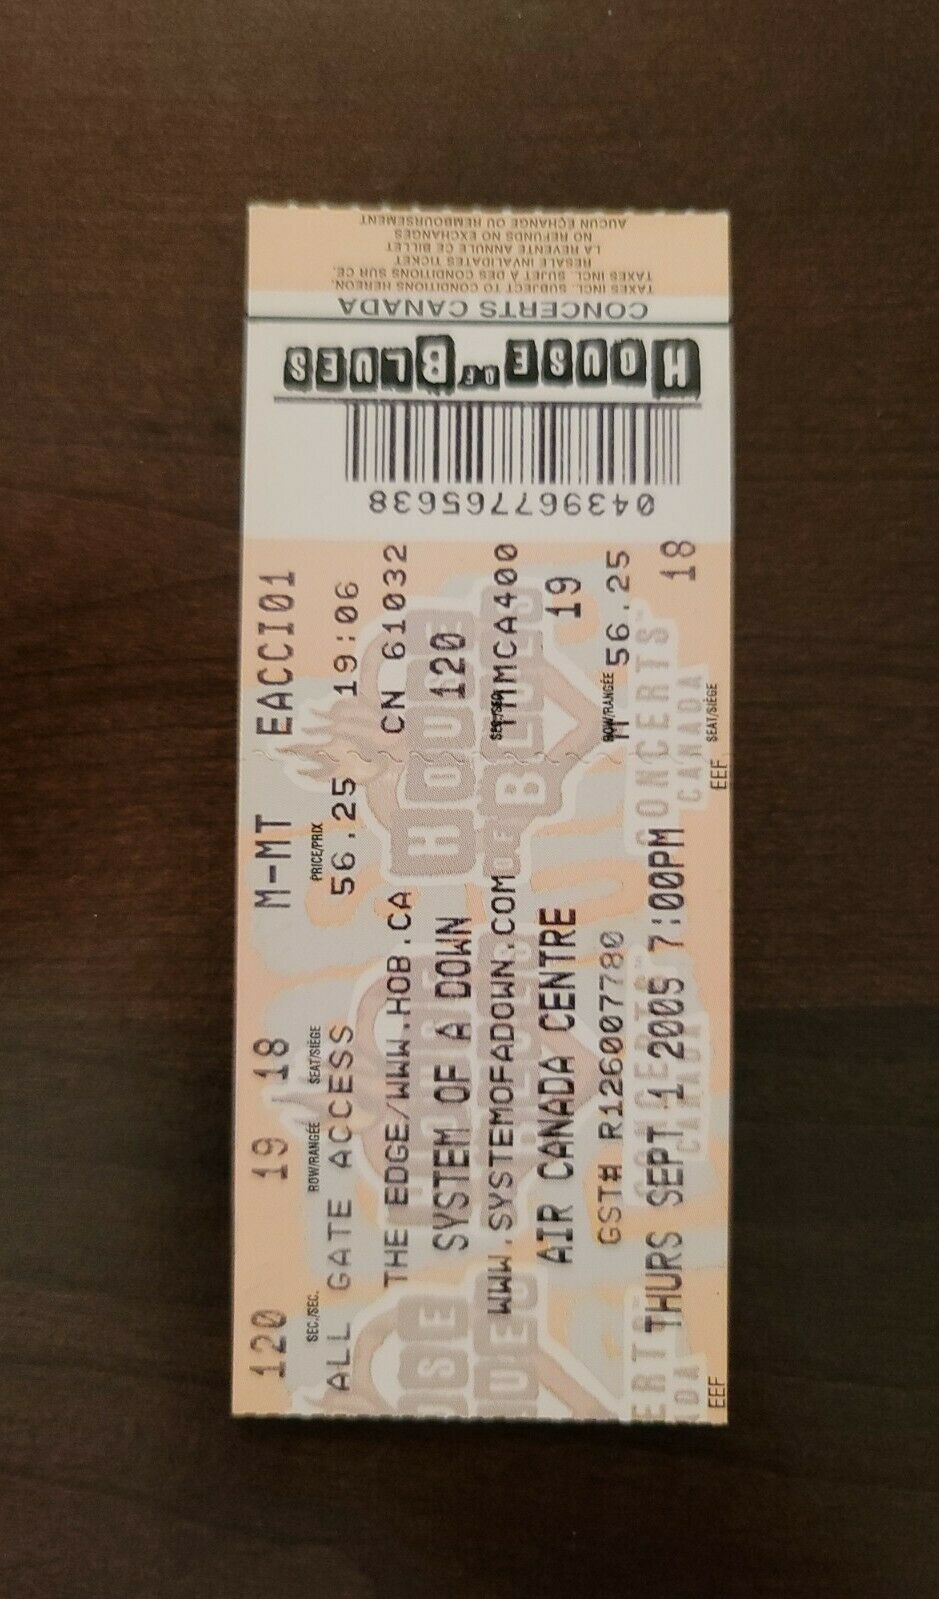 System Of A Down 2009, Toronto Air Canada Centre Original Concert Ticket Stub